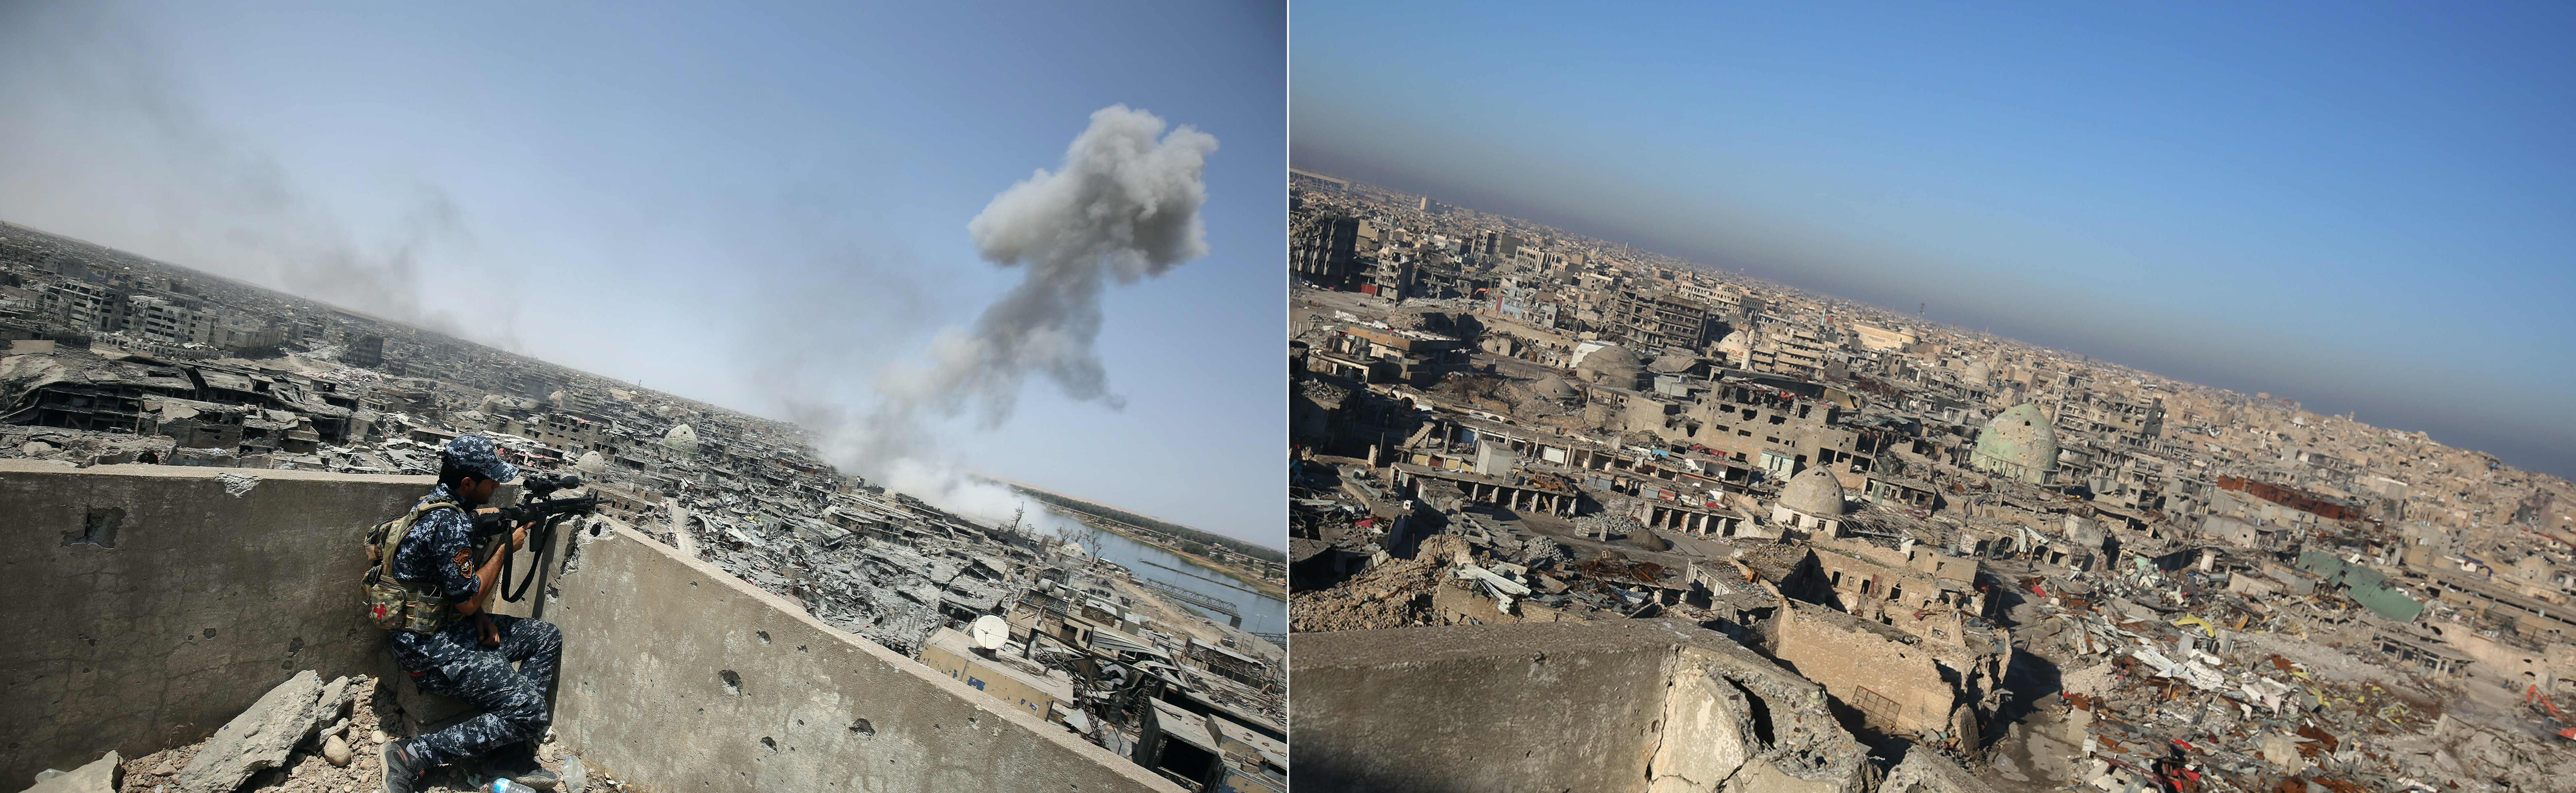 مواجهات القوات العراقية لتنظيم داعش فى الموصل